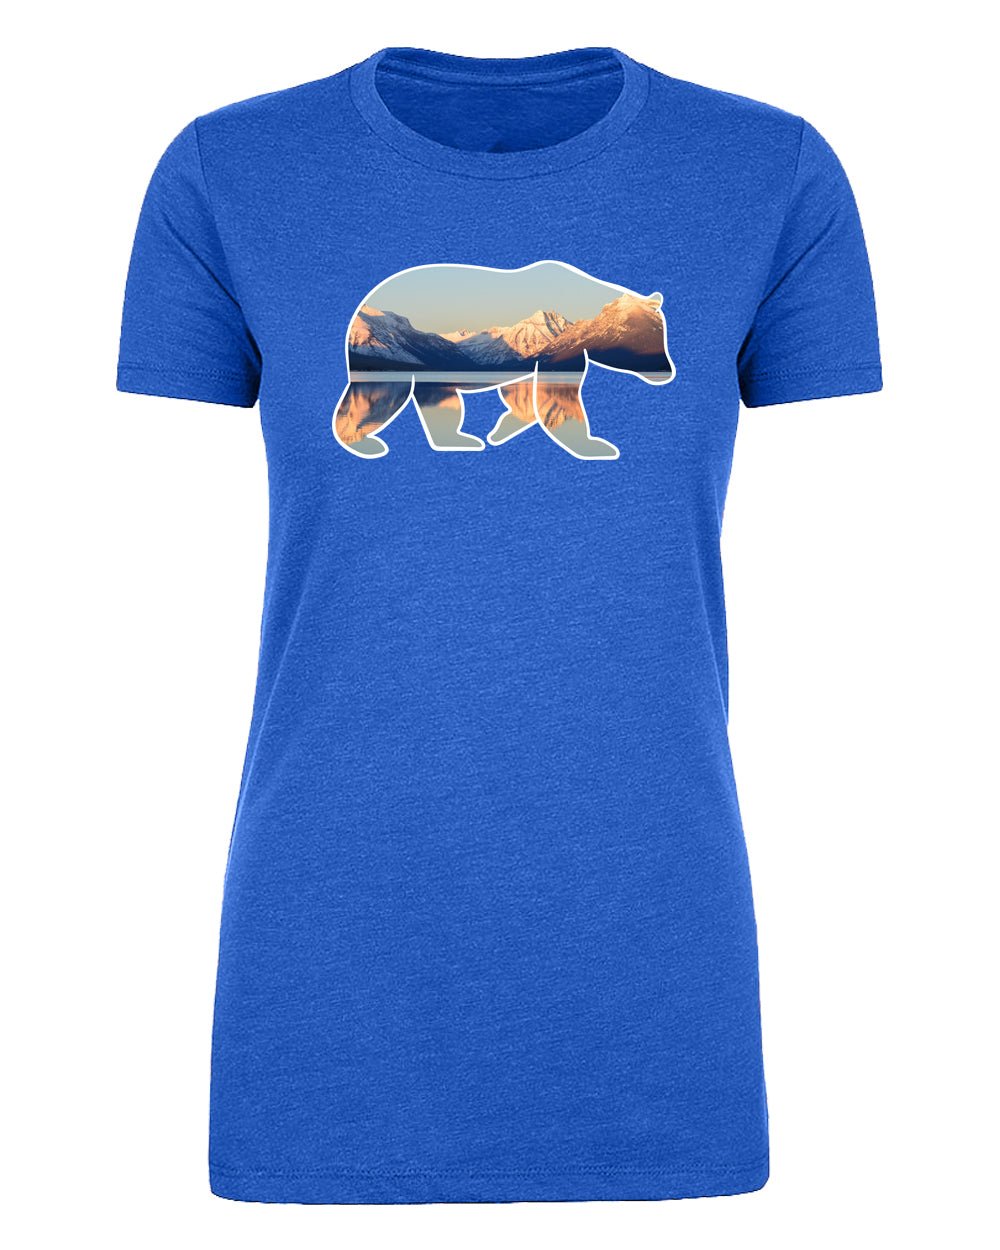 Shirt - Mountains In Bear Women's Graphic T-shirt, Outdoor Shirts